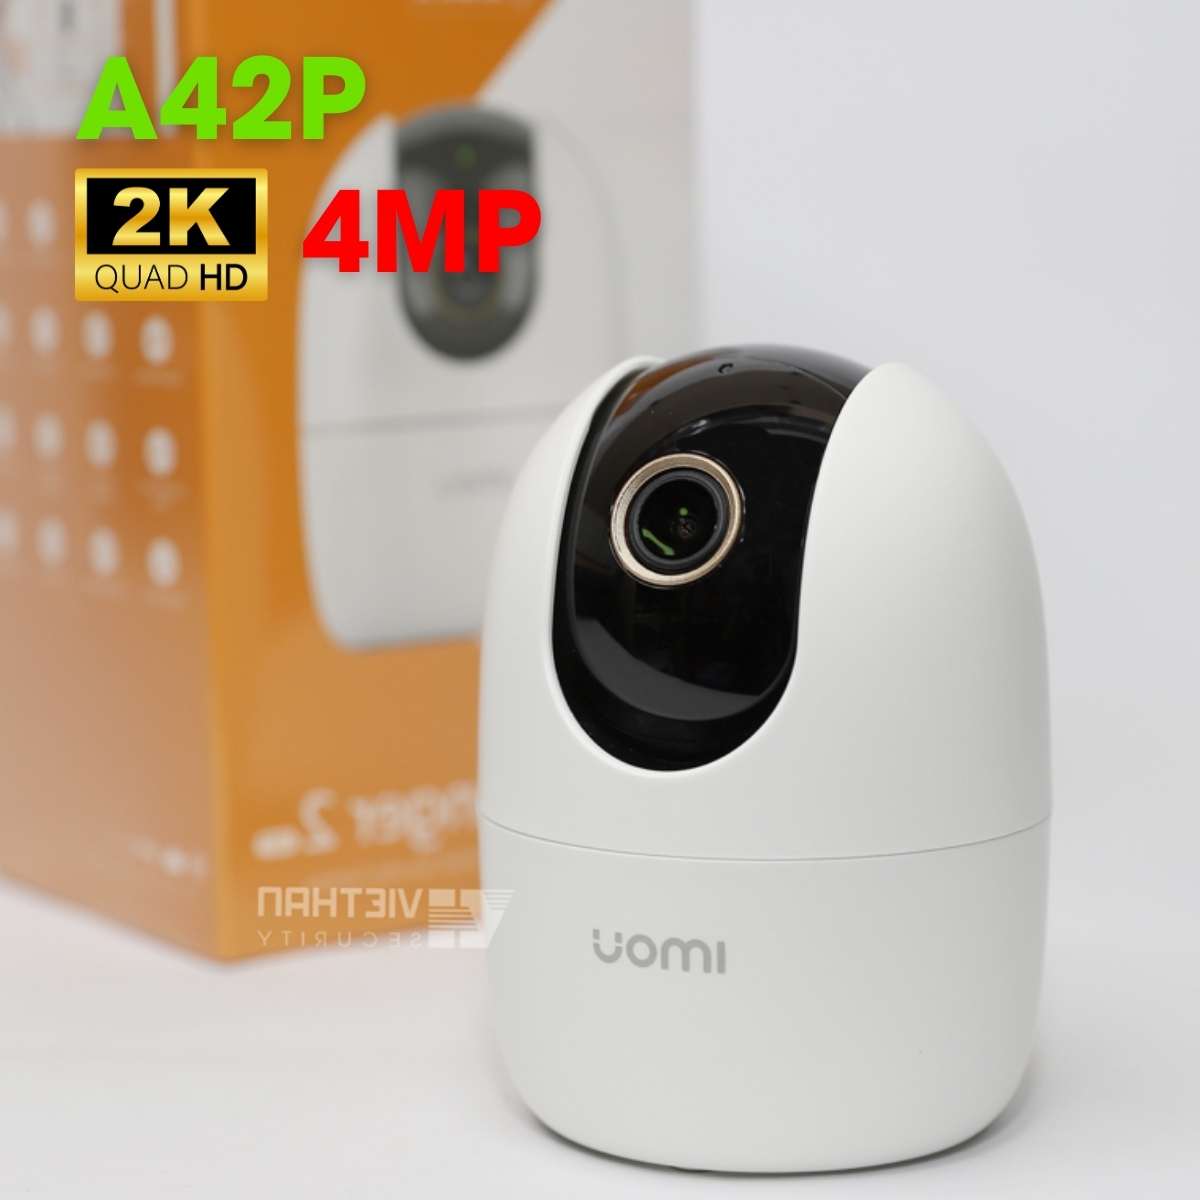 Camera Wifi IMOU IPC-A42P 4.0MP, cảnh báo chuyển động, hồng ngoại 10m, tính năng Wifi